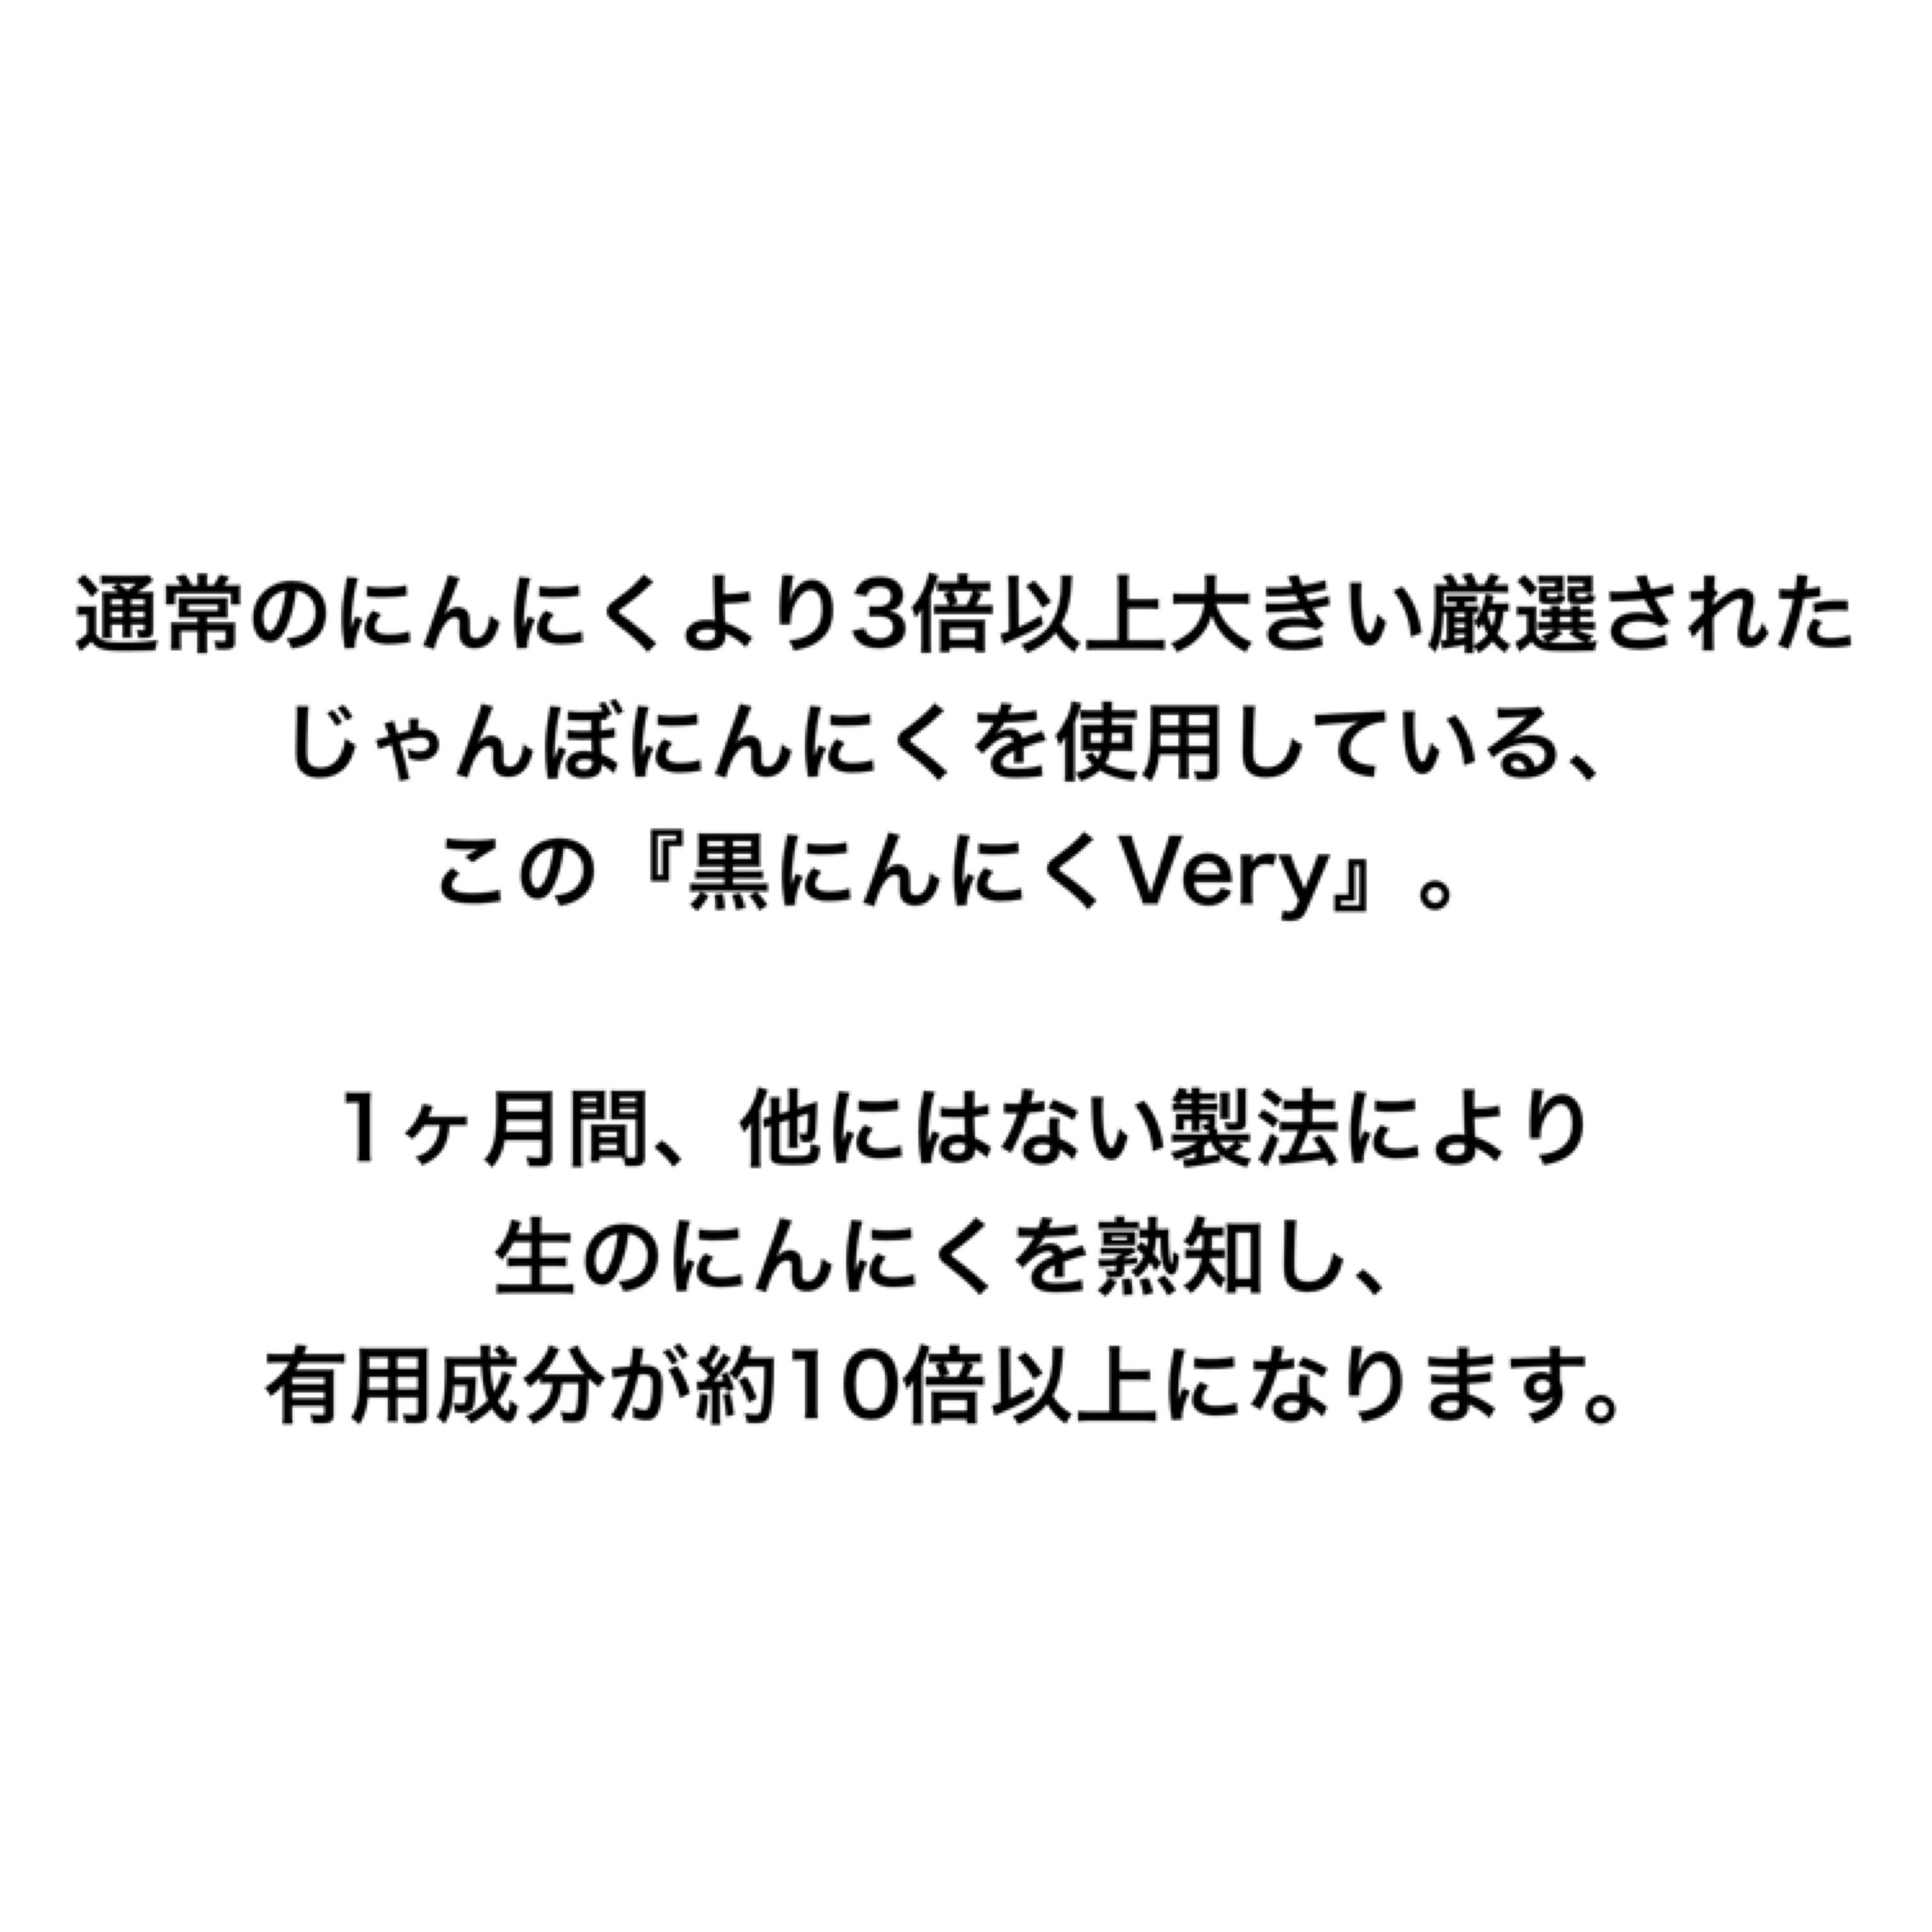 黒にんにく　Very』ーMAOBIE単体デザイン(5個包装入り)ー　KU-KAI-GO8